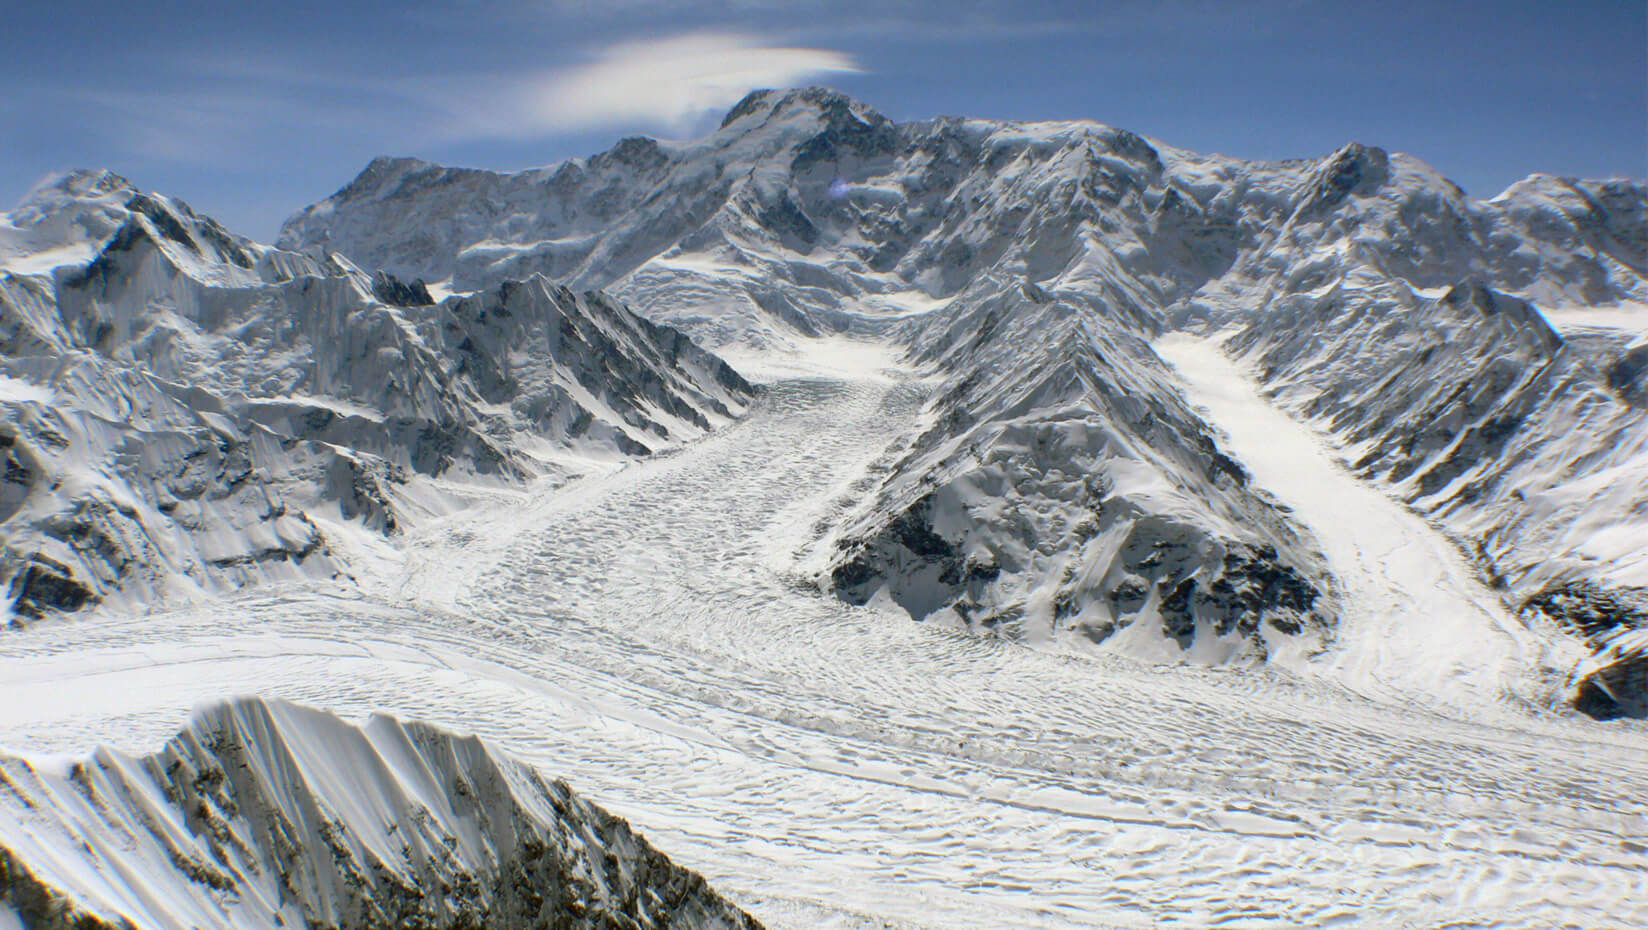 Inilchek Glacier